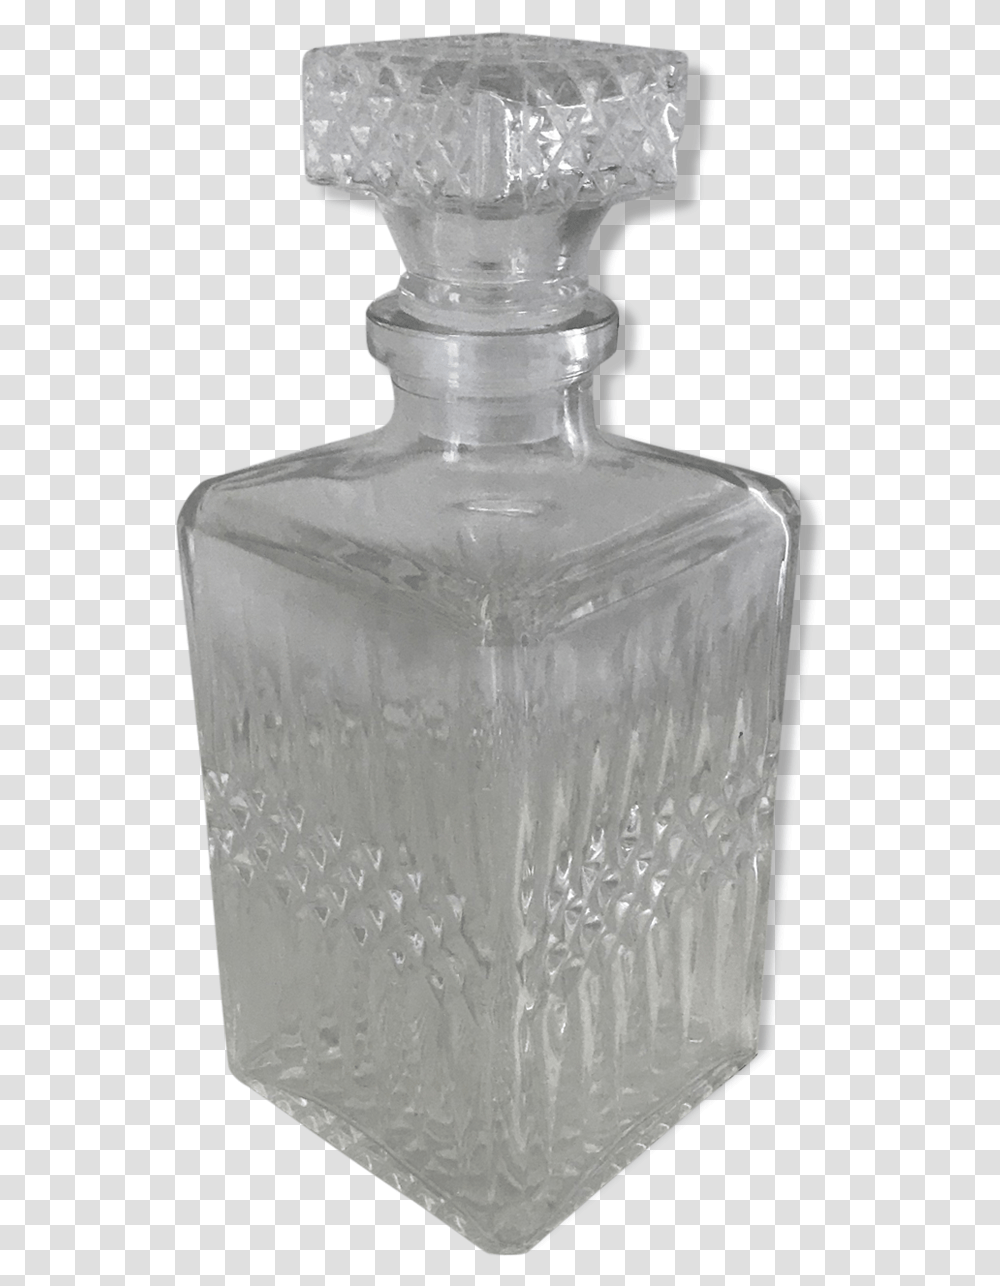 Glass Effect Glass Bottle, Rug, Ink Bottle, Jar, Wedding Cake Transparent Png